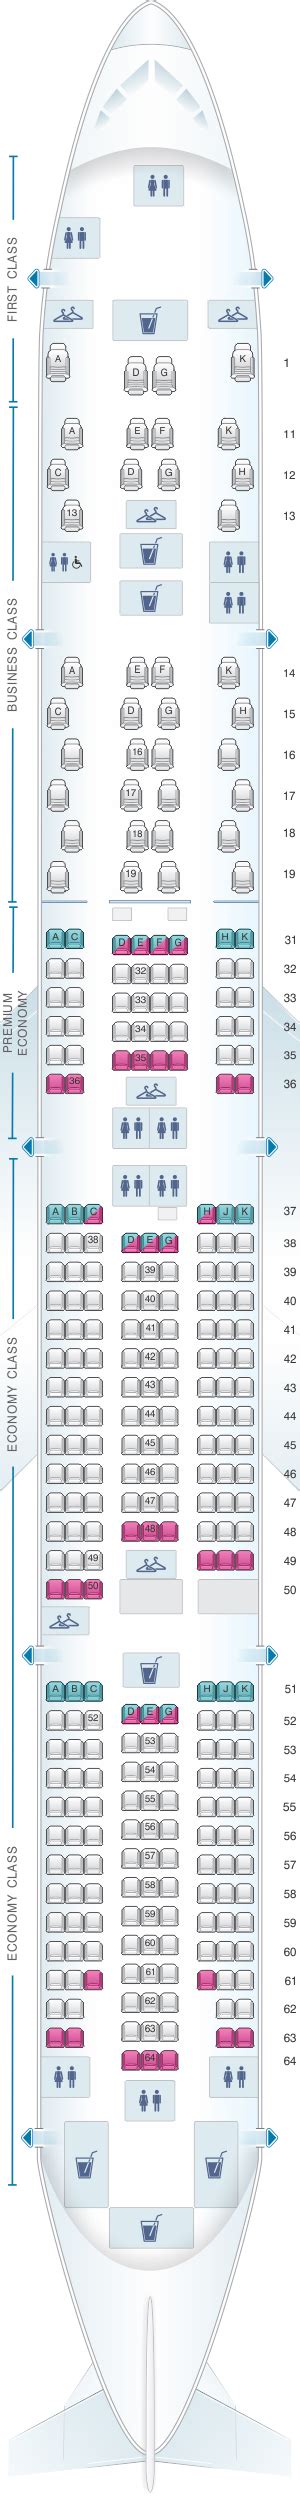 Air China Boeing 777 300 Seating Chart Chart Walls